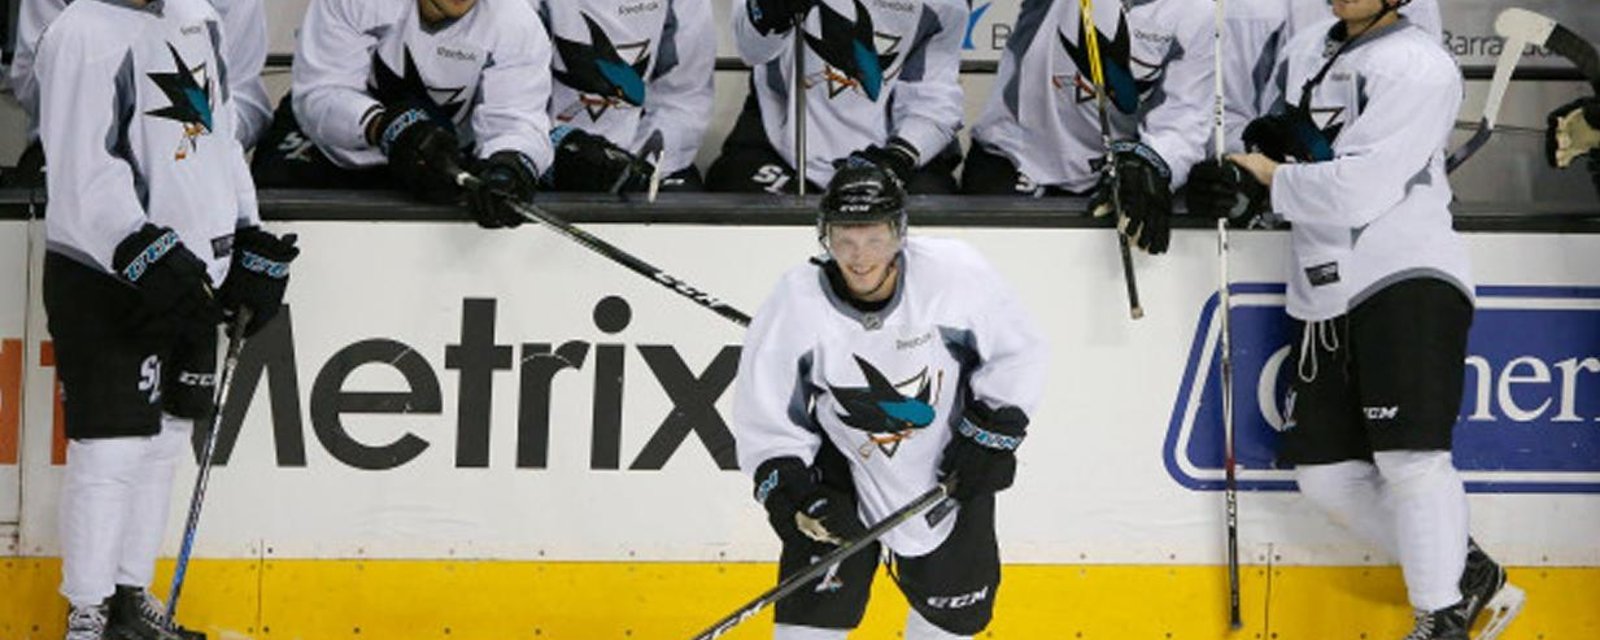 Diminutive Shark's prospect debuts in NHL camp. 